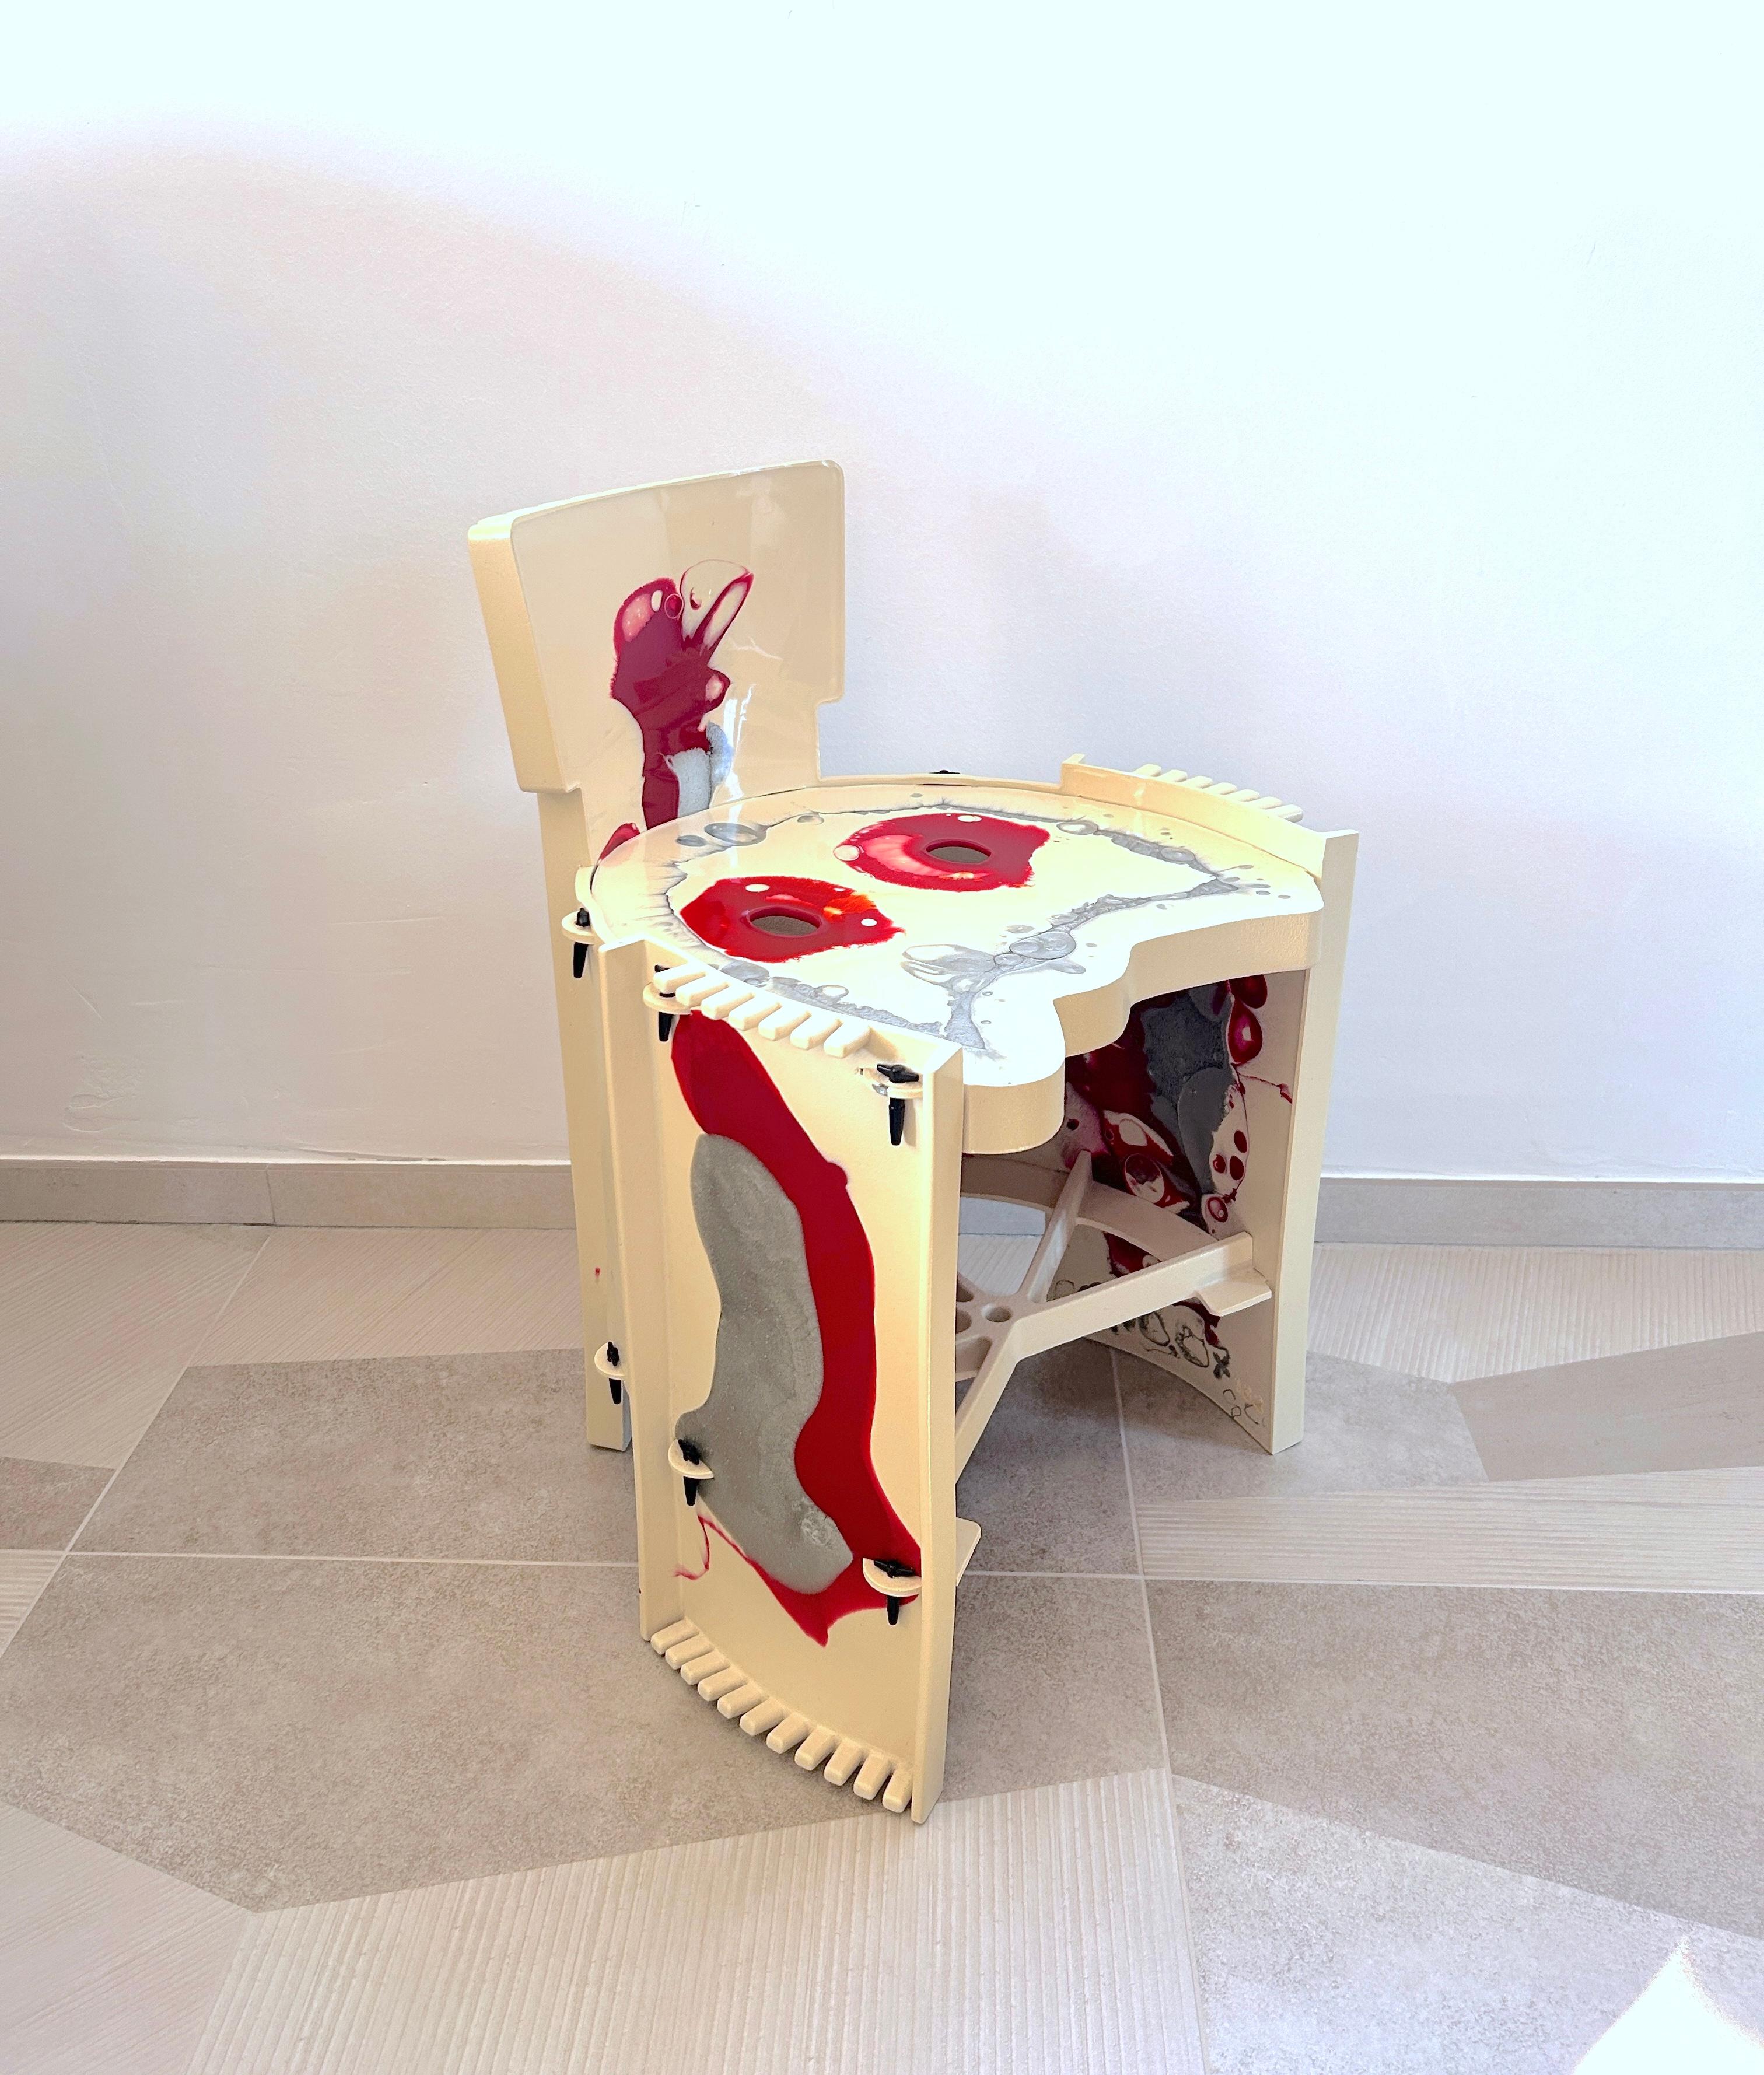 Magnifique petite chaise réalisée par Gaetano Pesce pour Zerodiegno en 2003.
Décorée dans des tons de blanc, de rouge et d'argent, elle confère une touche d'élégance à l'environnement dans lequel elle est placée. Il peut être utilisé par les enfants